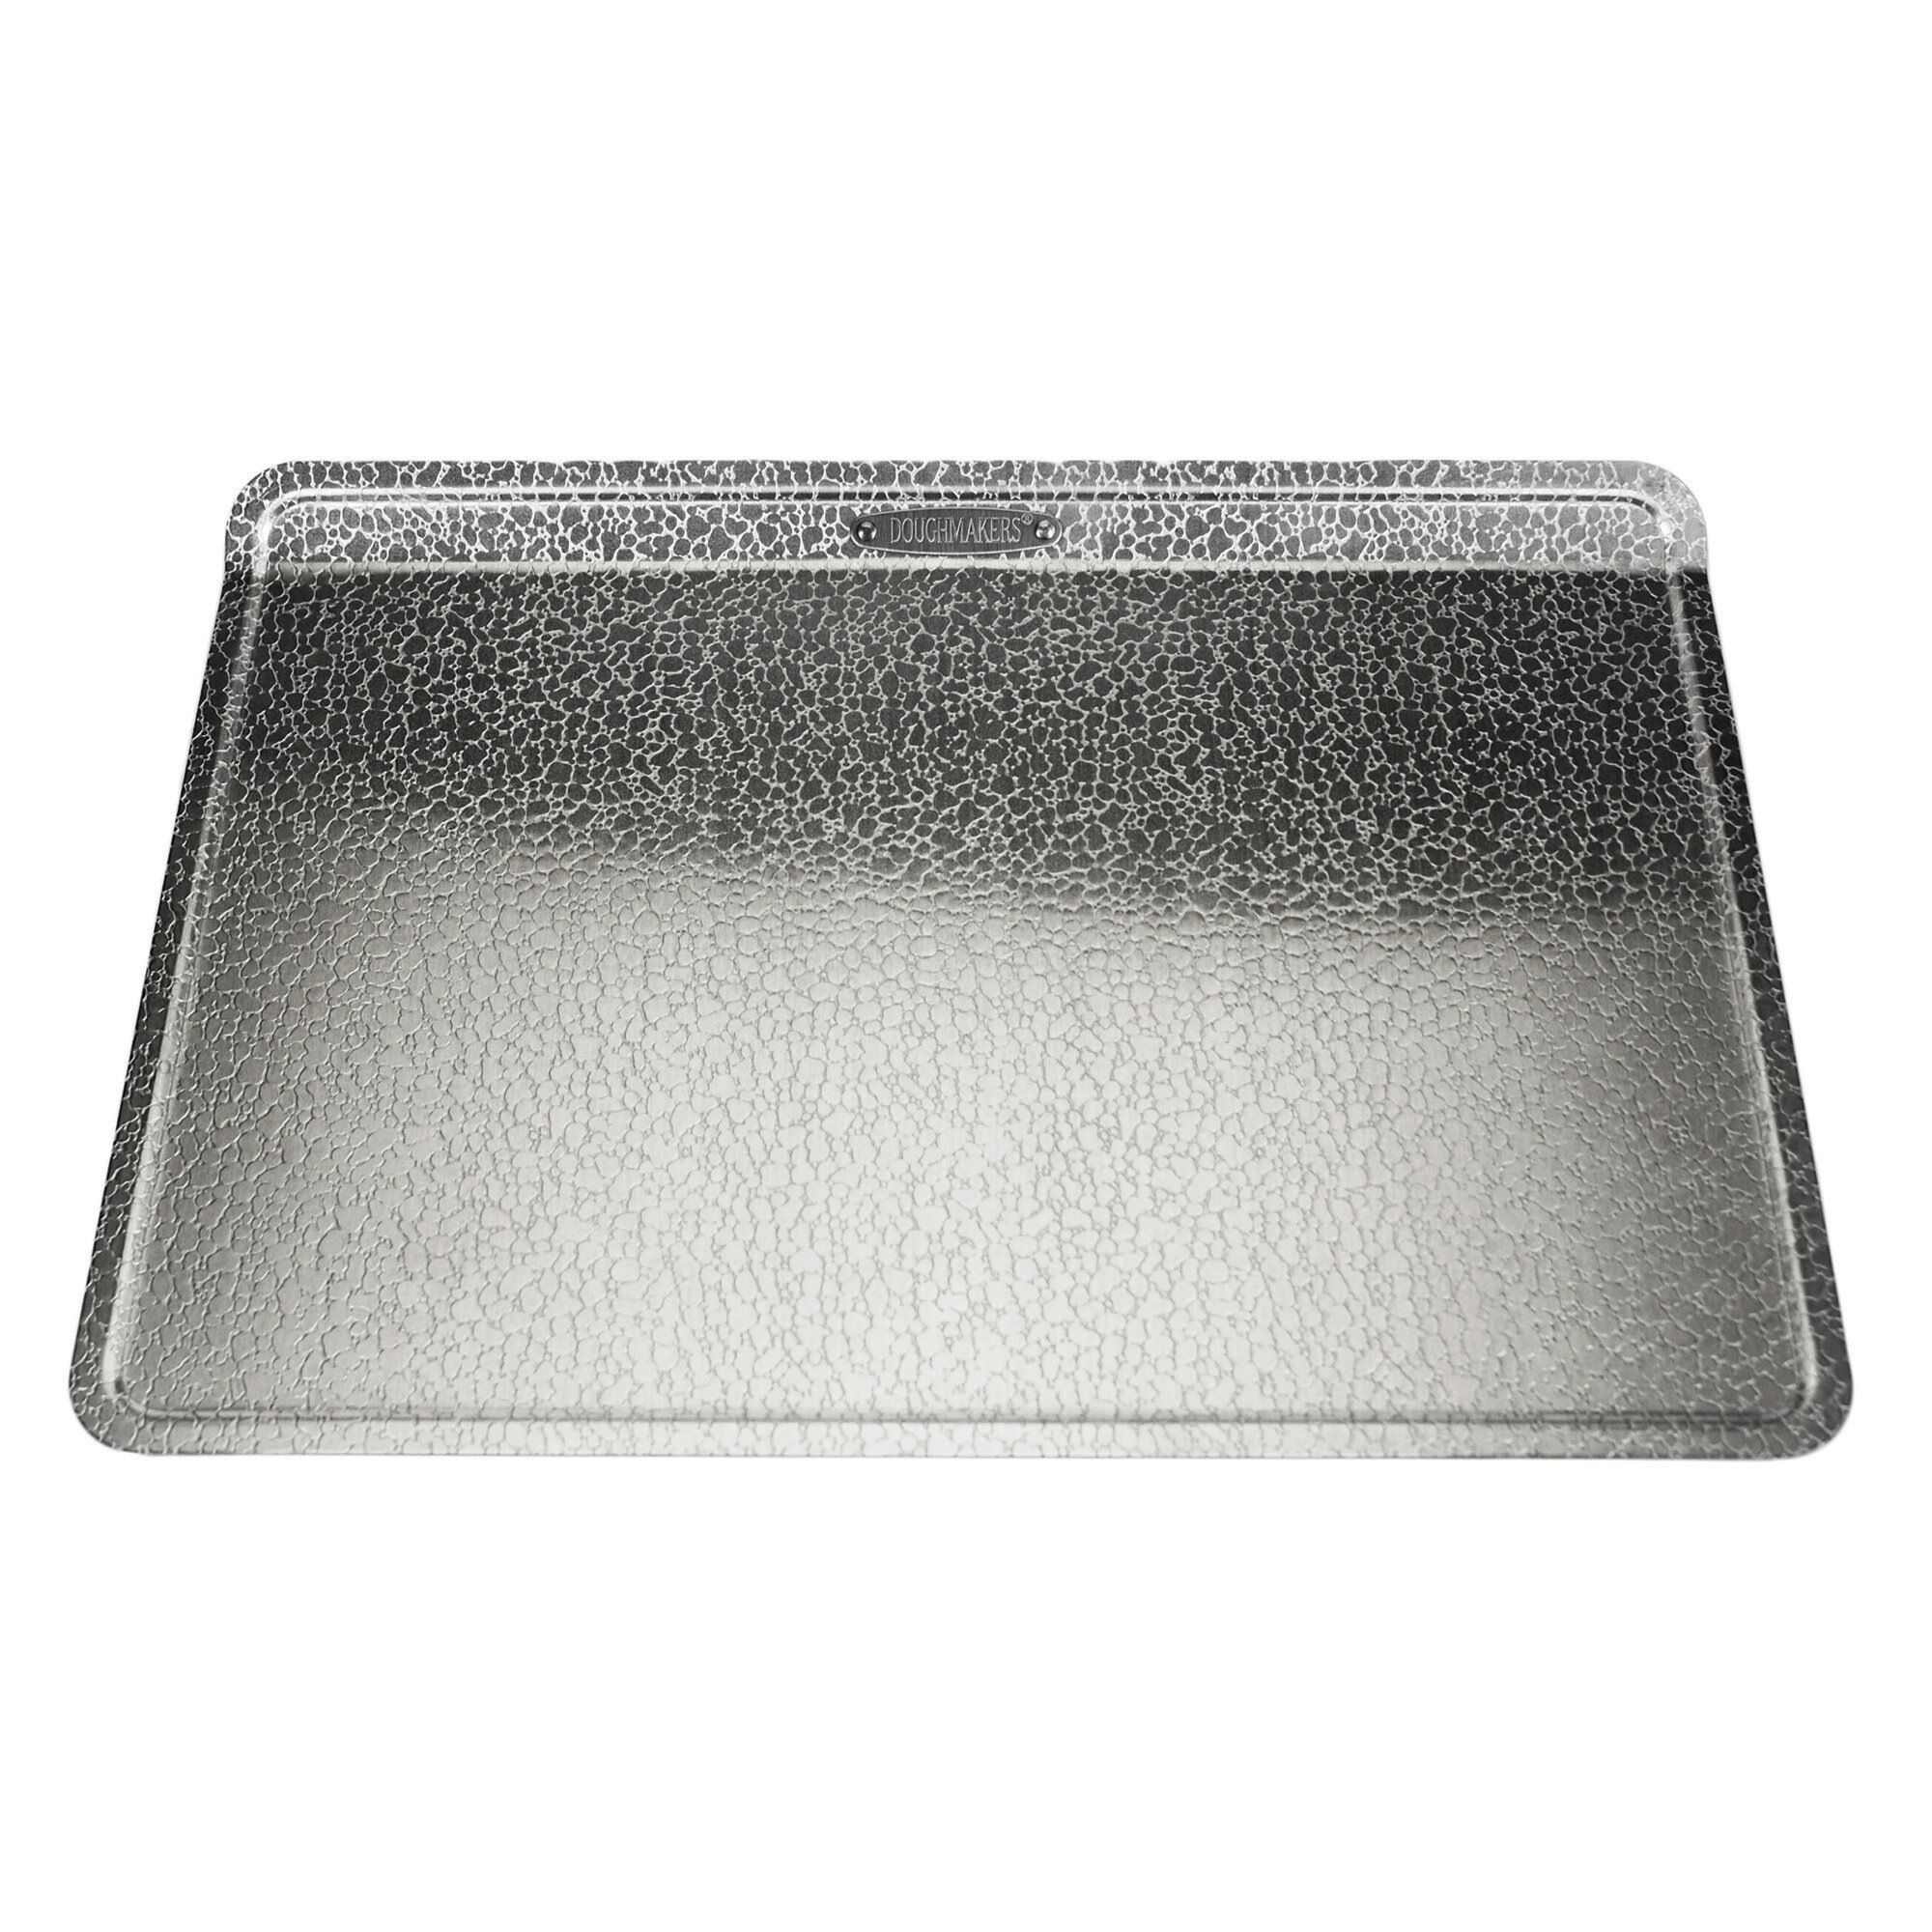 Zulay Large Aluminum Baking Pan - Half Sheet (13 x 18)